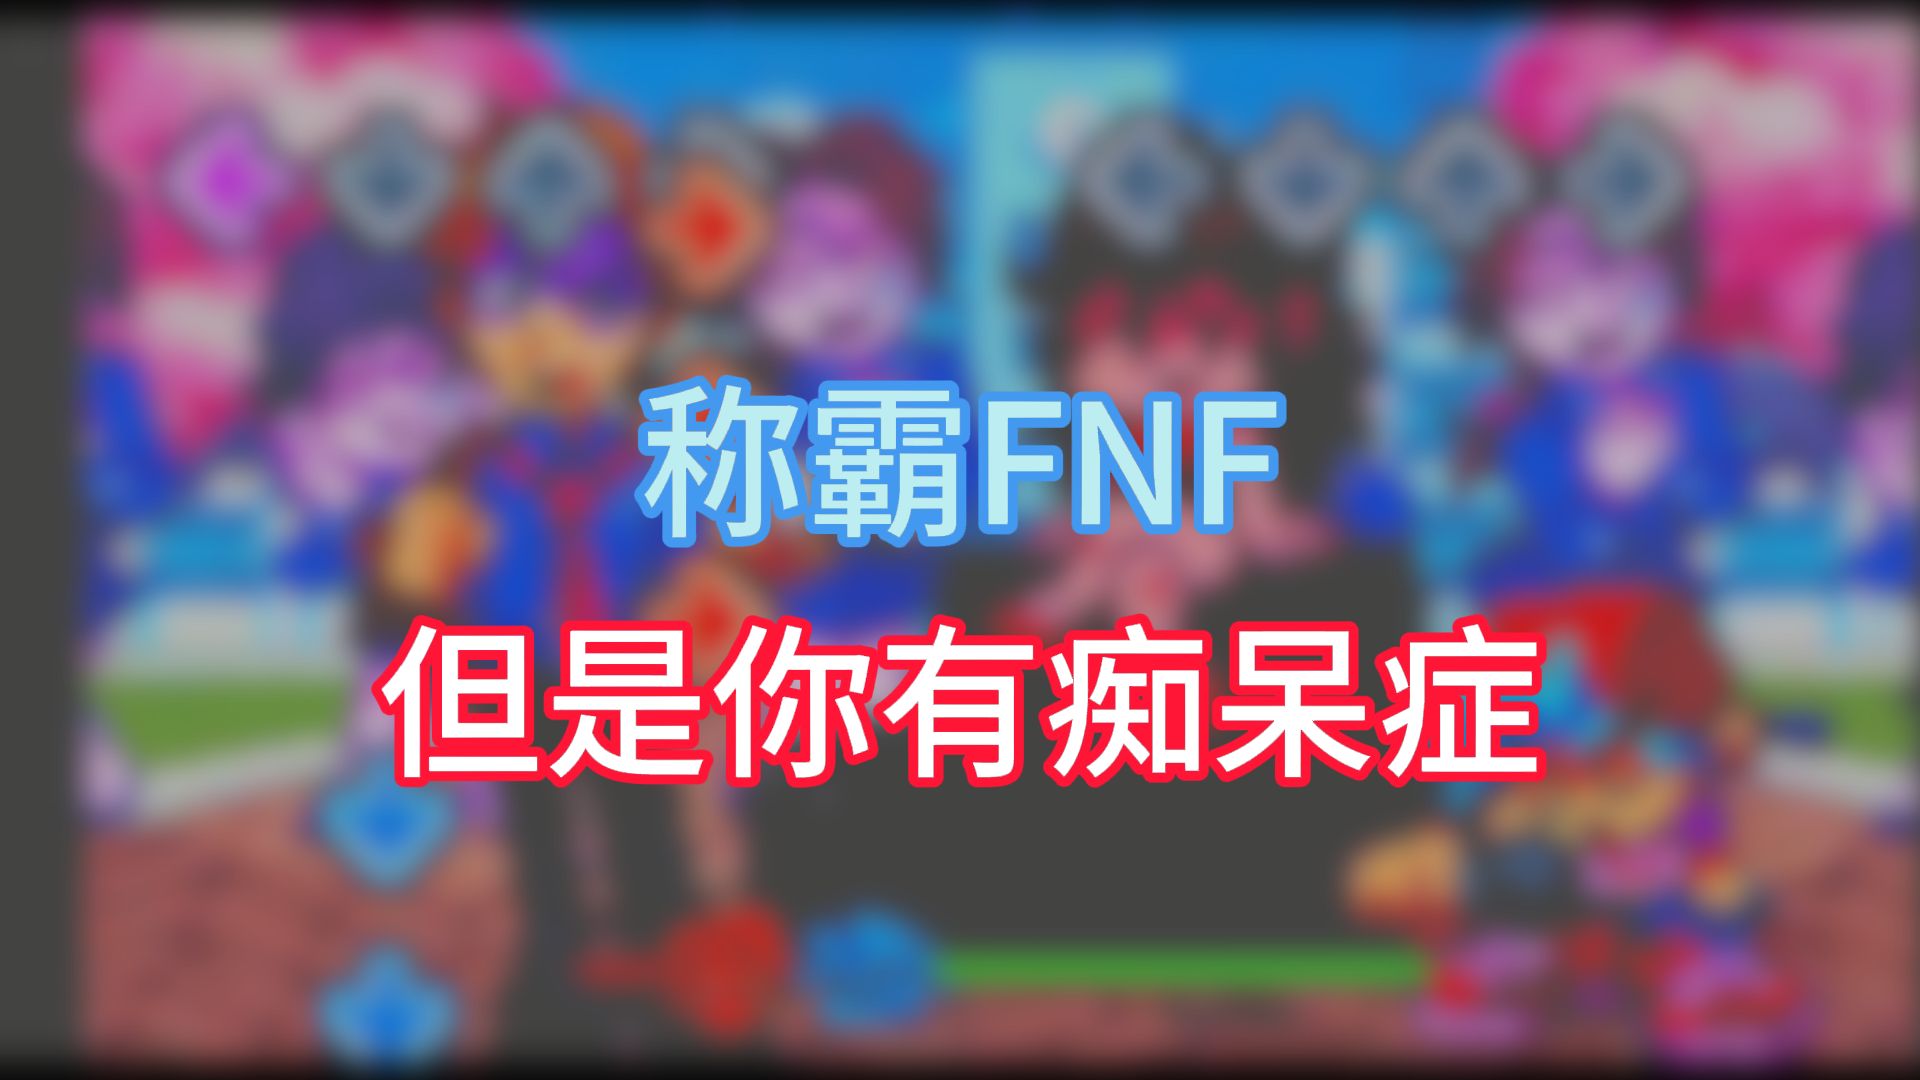 【中文字幕】你能在得了痴呆症的情况下拿到FNF所有歌的P评分吗【中文字幕】你能在得了痴呆症的情况下拿到FNF所有歌的P评分吗